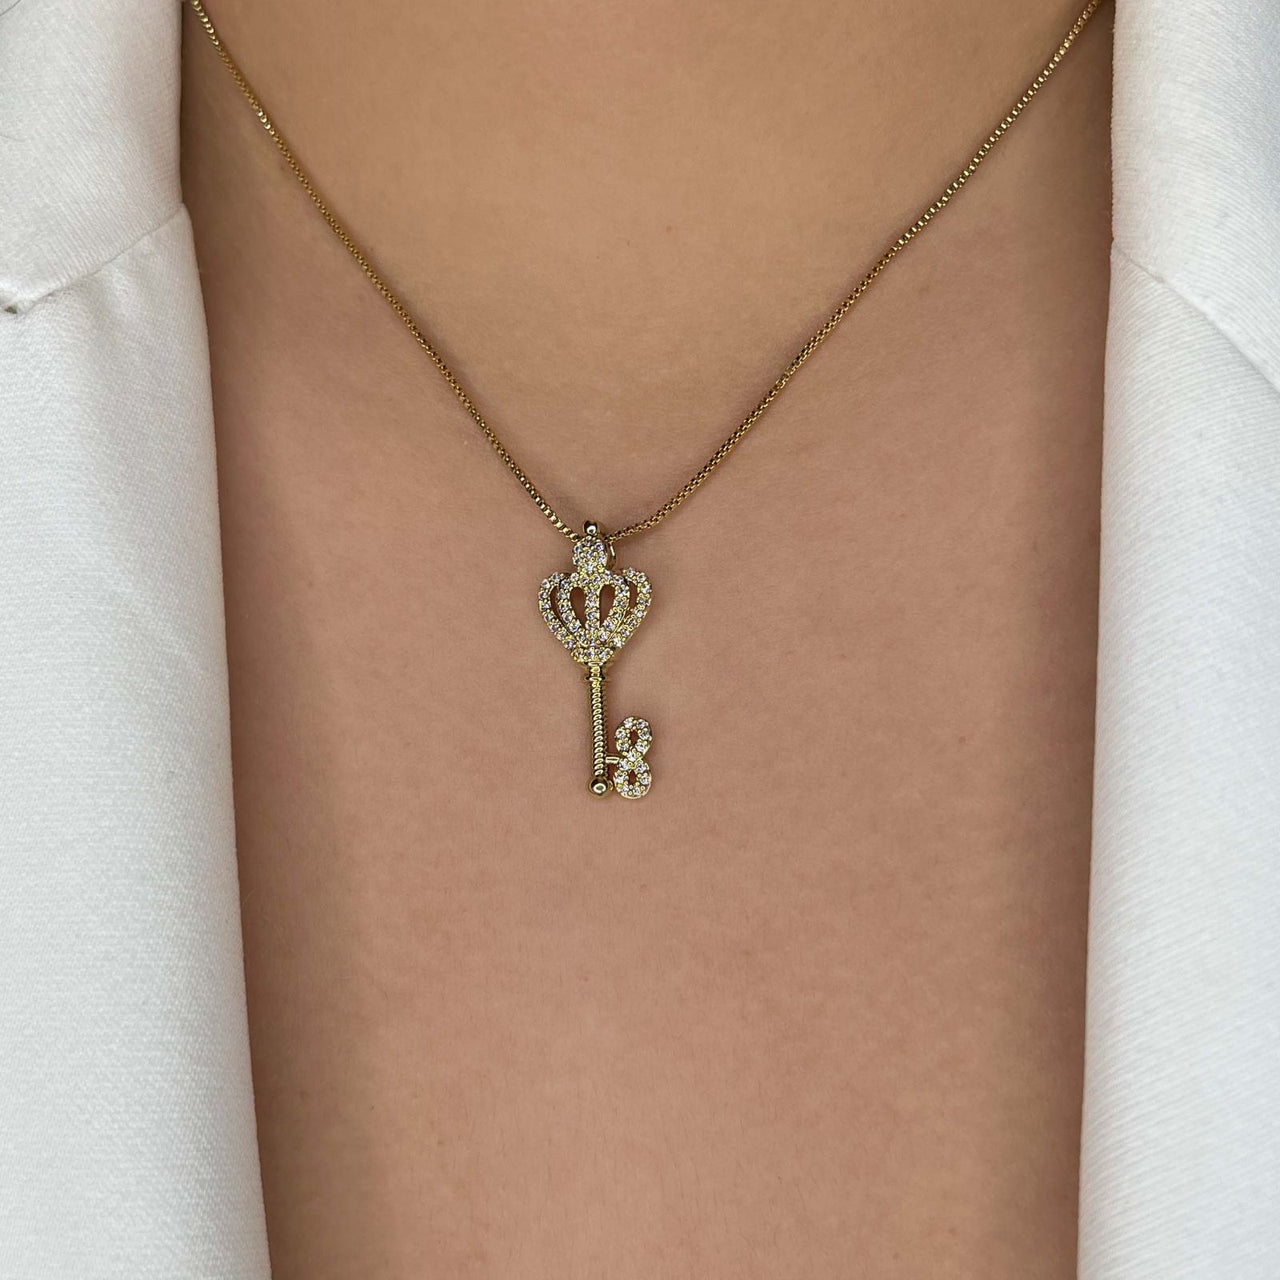 Royal Key Necklace (997)